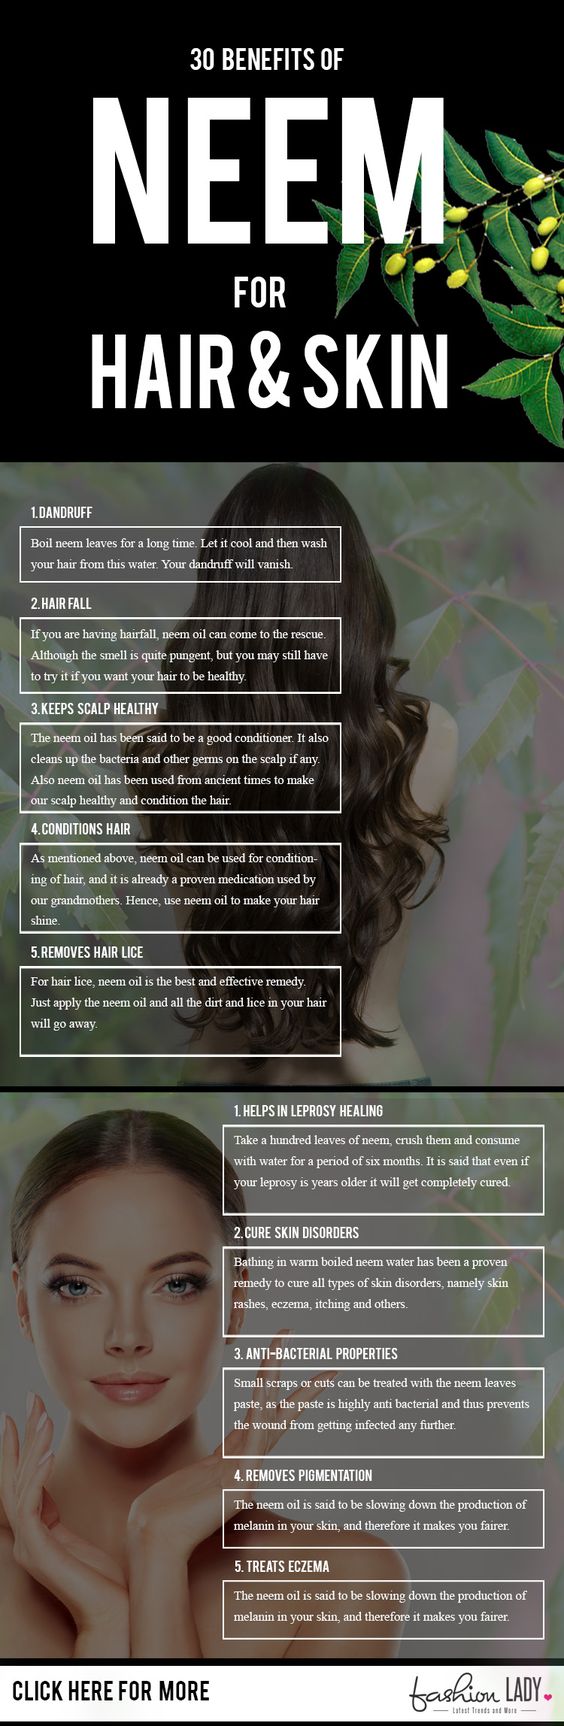 Wunderbare Neem Vorteile für Haar, Haut und Gesundheit 